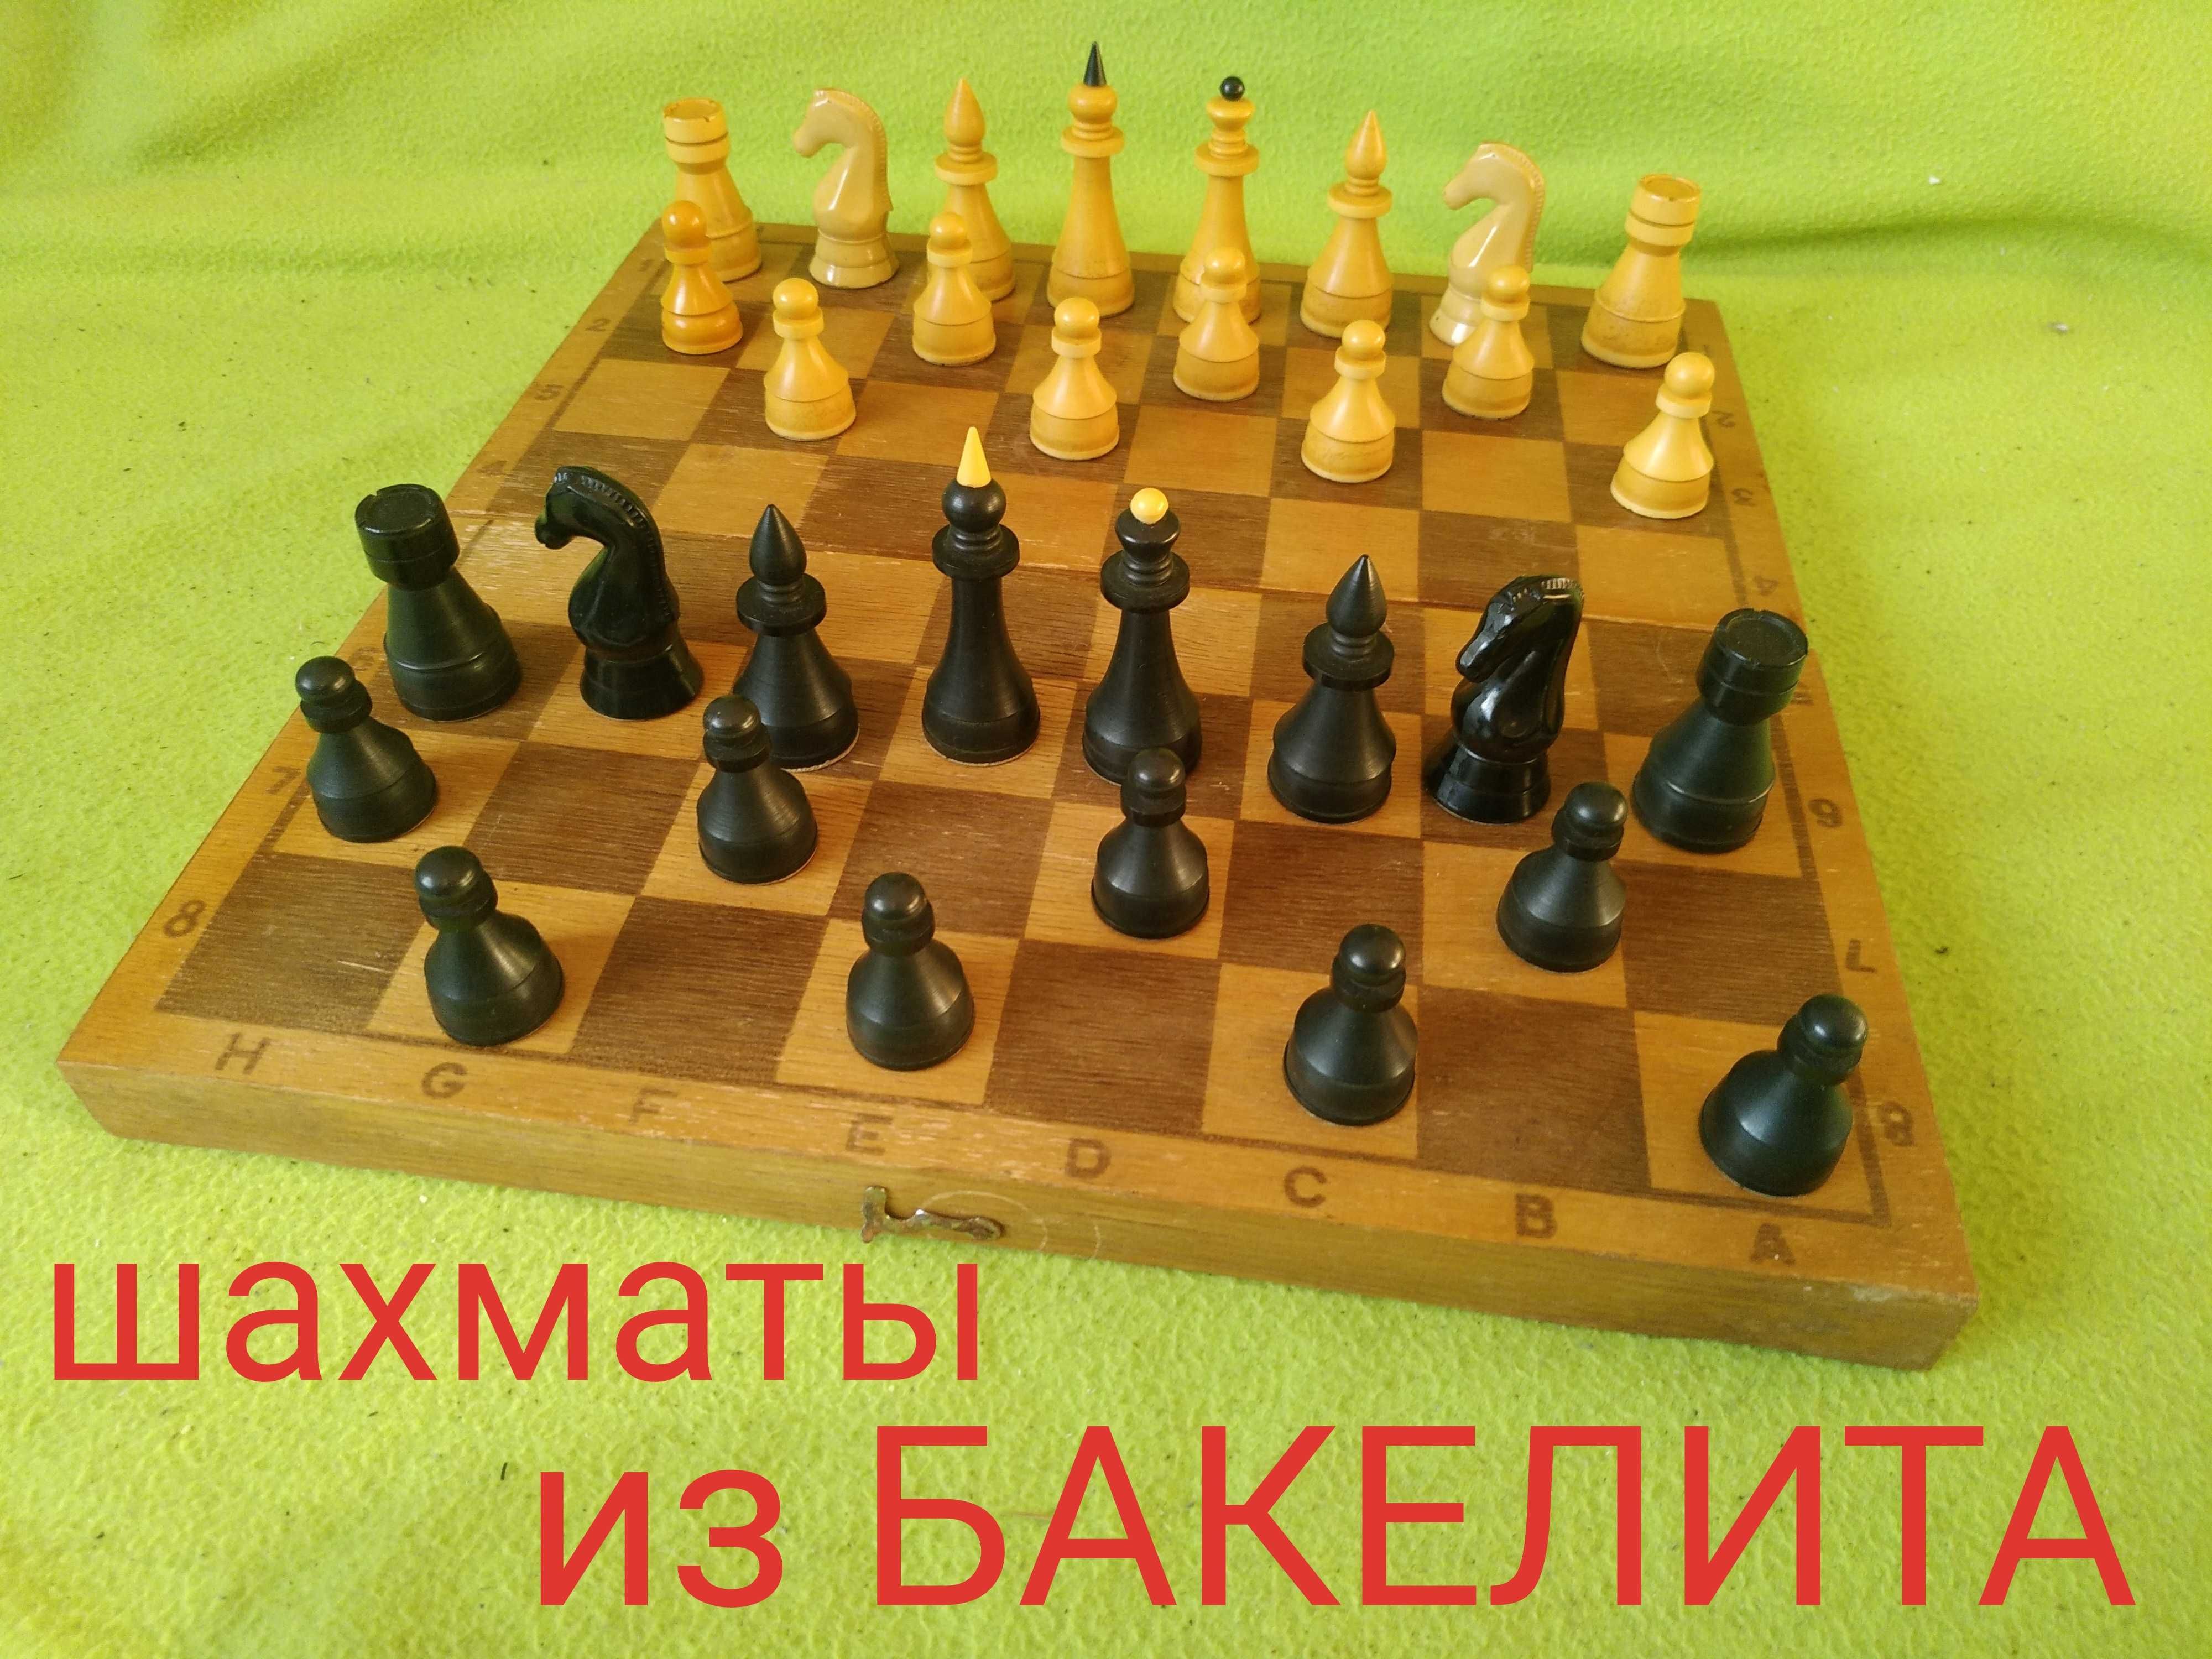 БАКЕЛИТОВЫЕ шахматы, шахмати (60 тые года) - БЕЗ ПОВРЕЖДЕНИЙ!